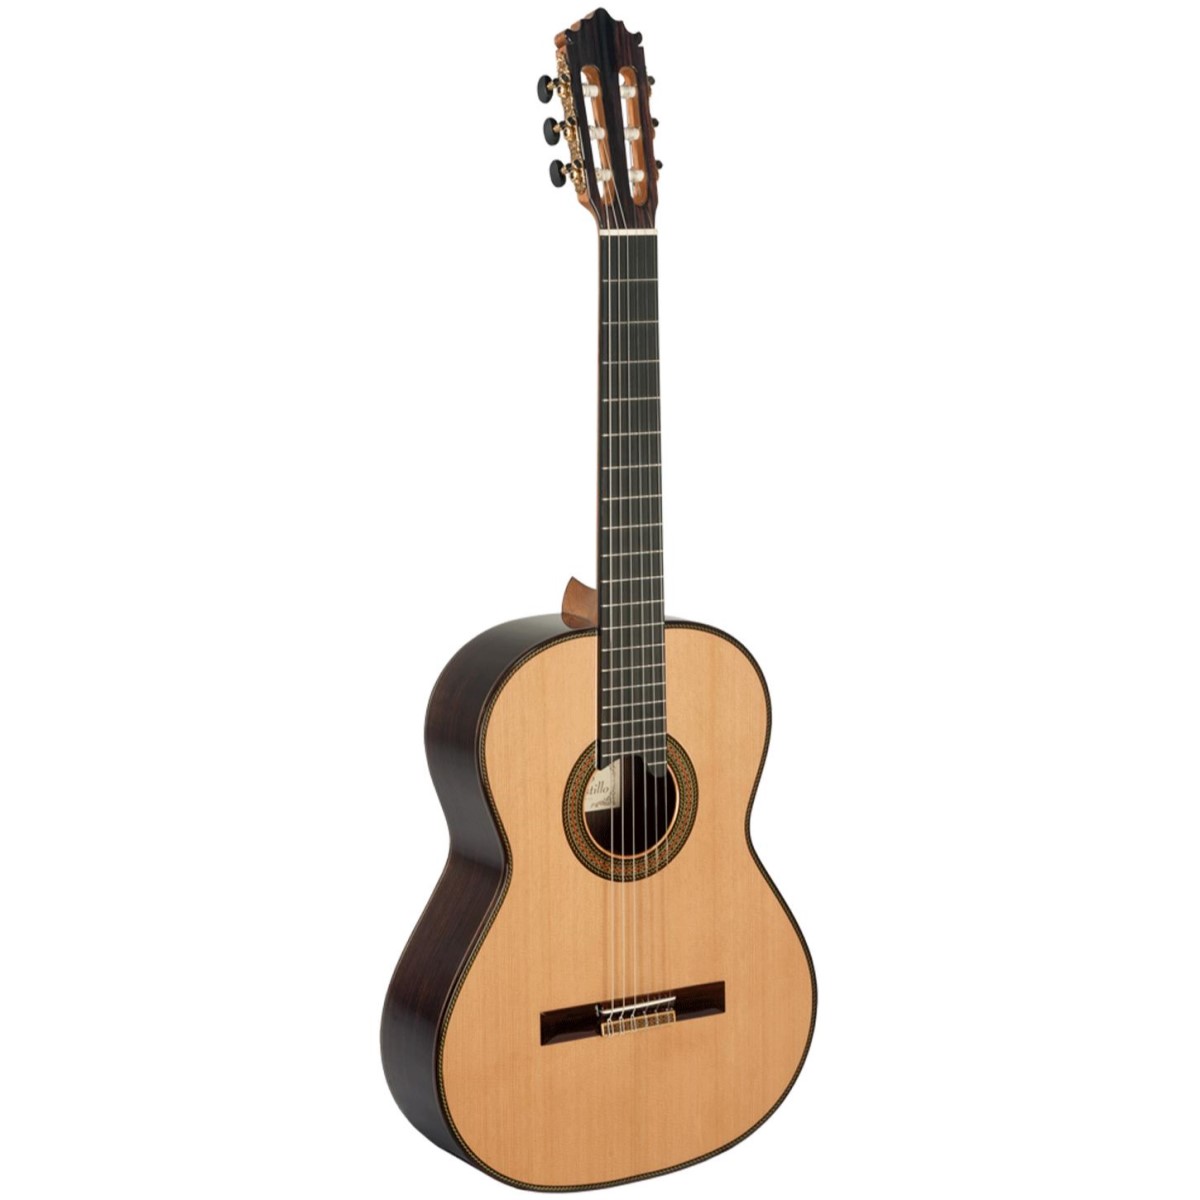 Comprar Guitarra Profesional Paco Castillo al mejor precio en Prieto